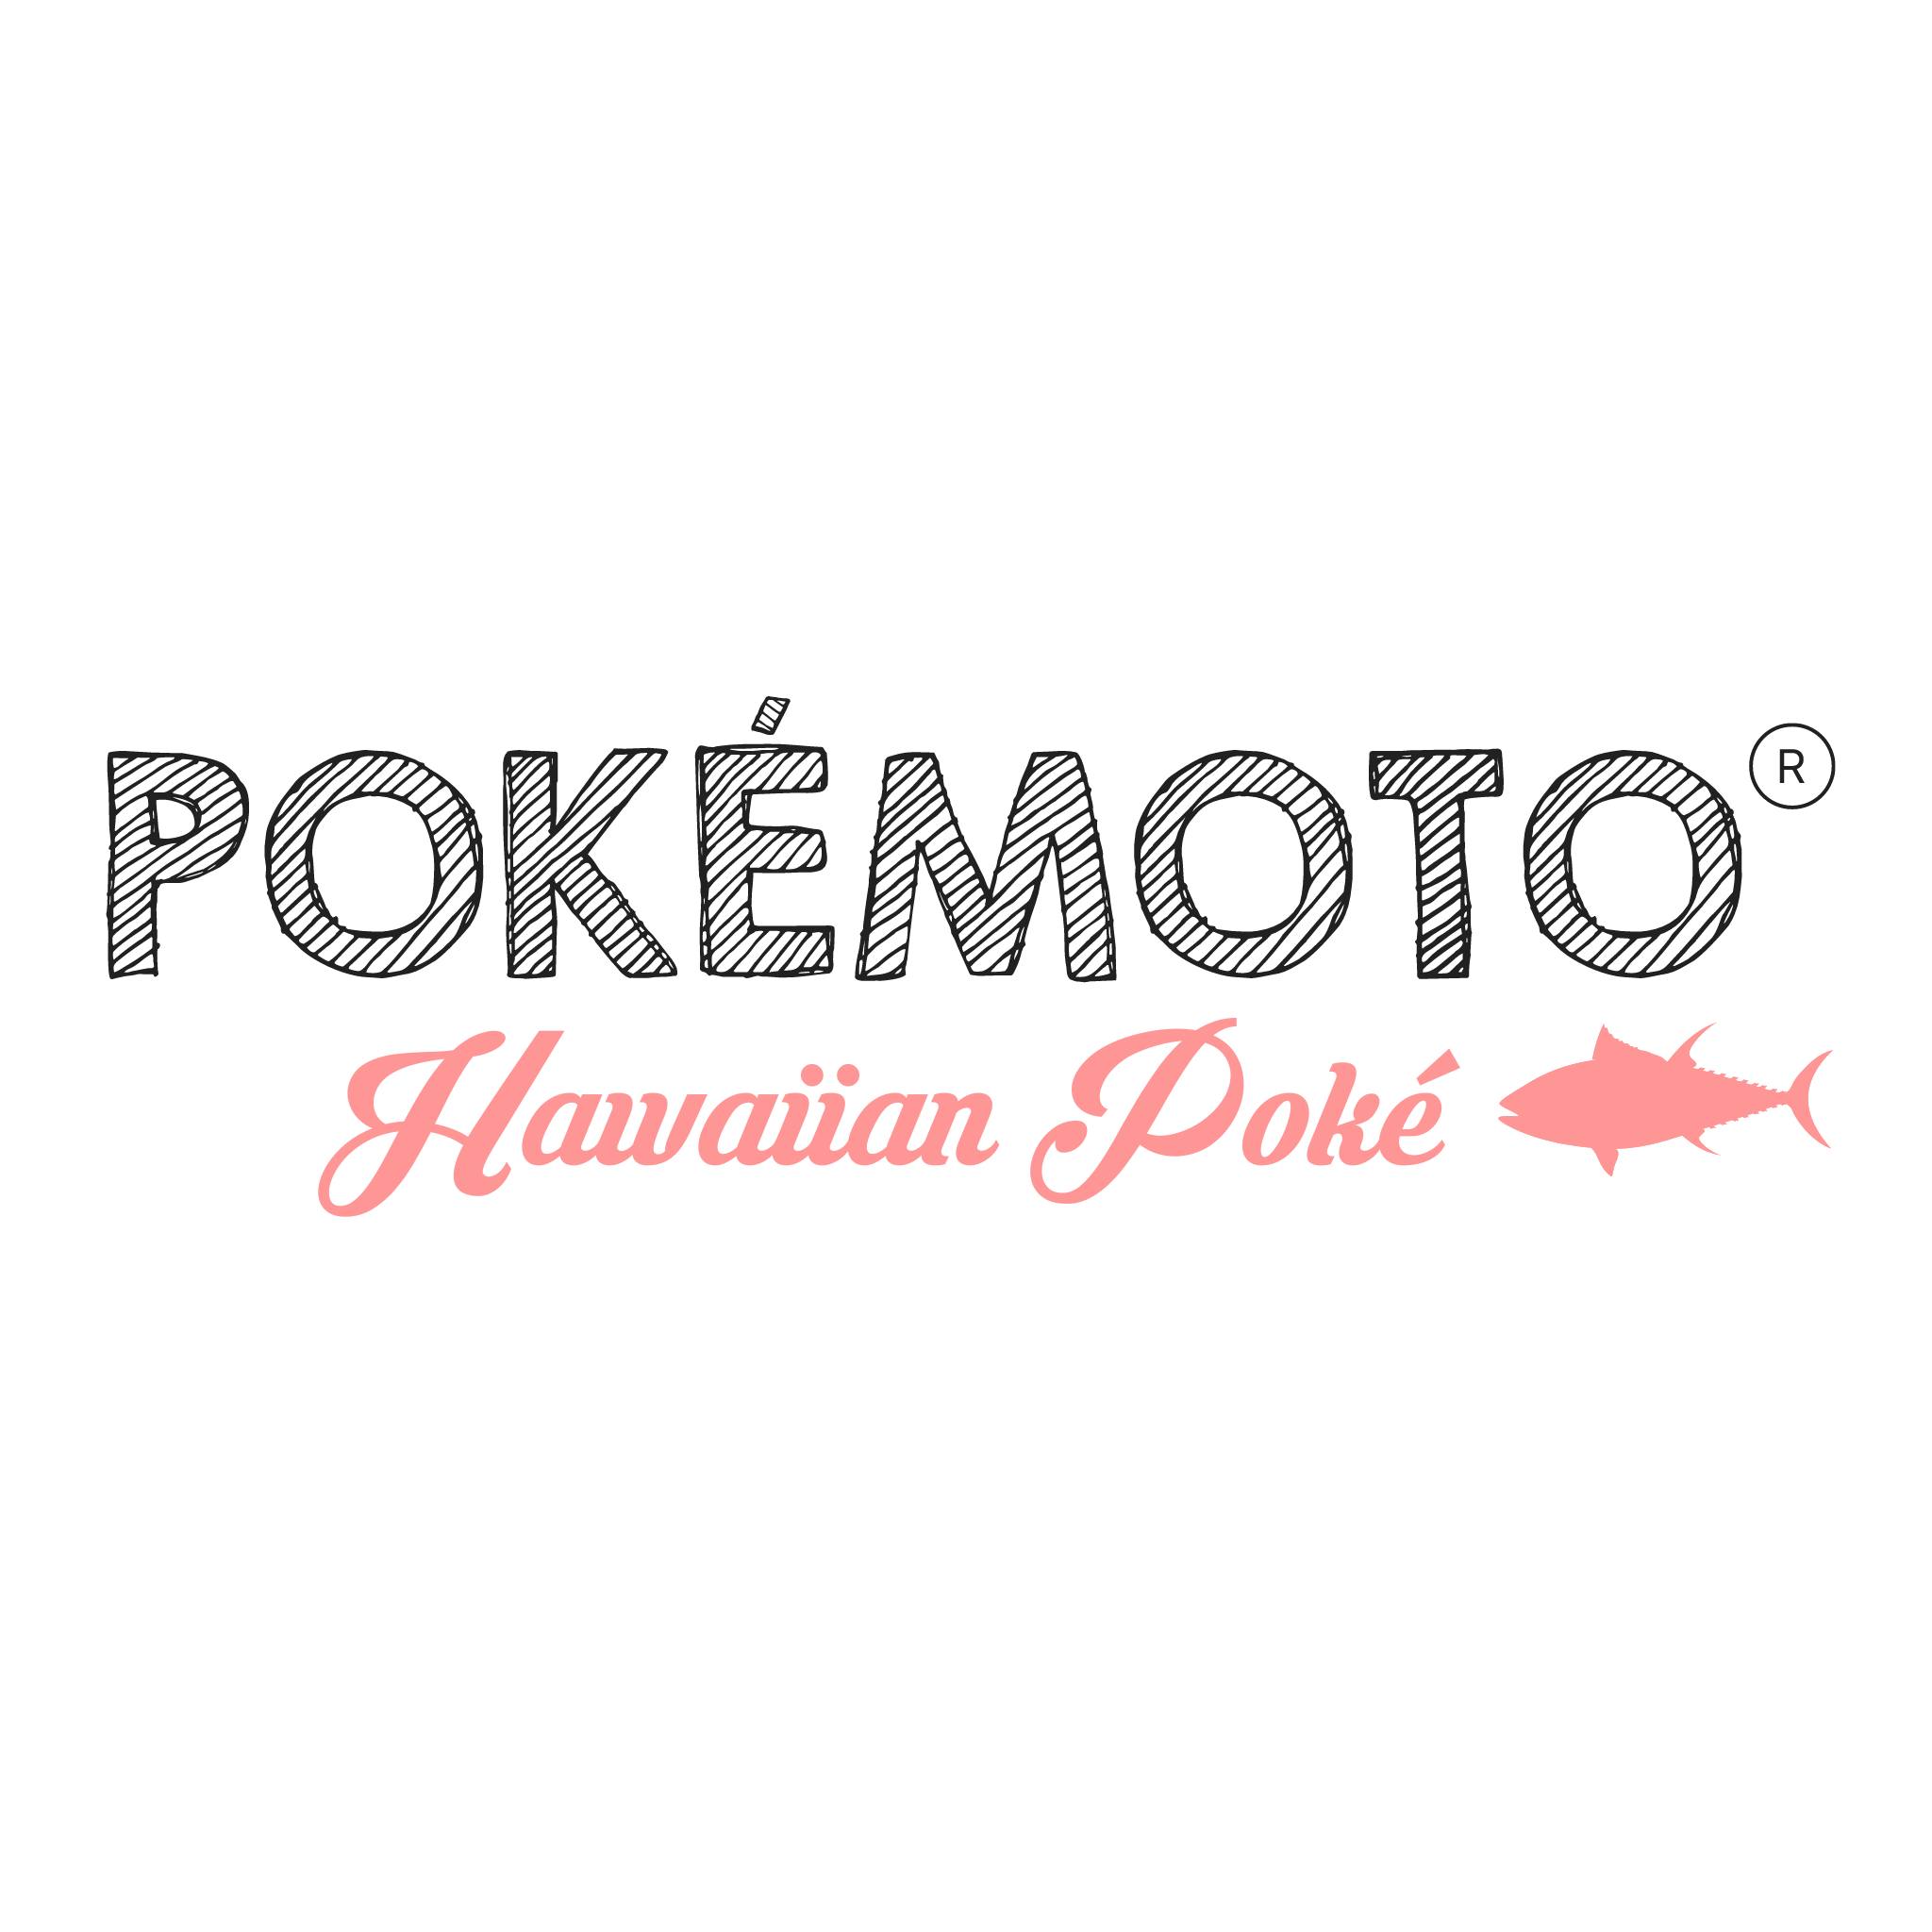 Pokemoto, Hawaiian Poke 